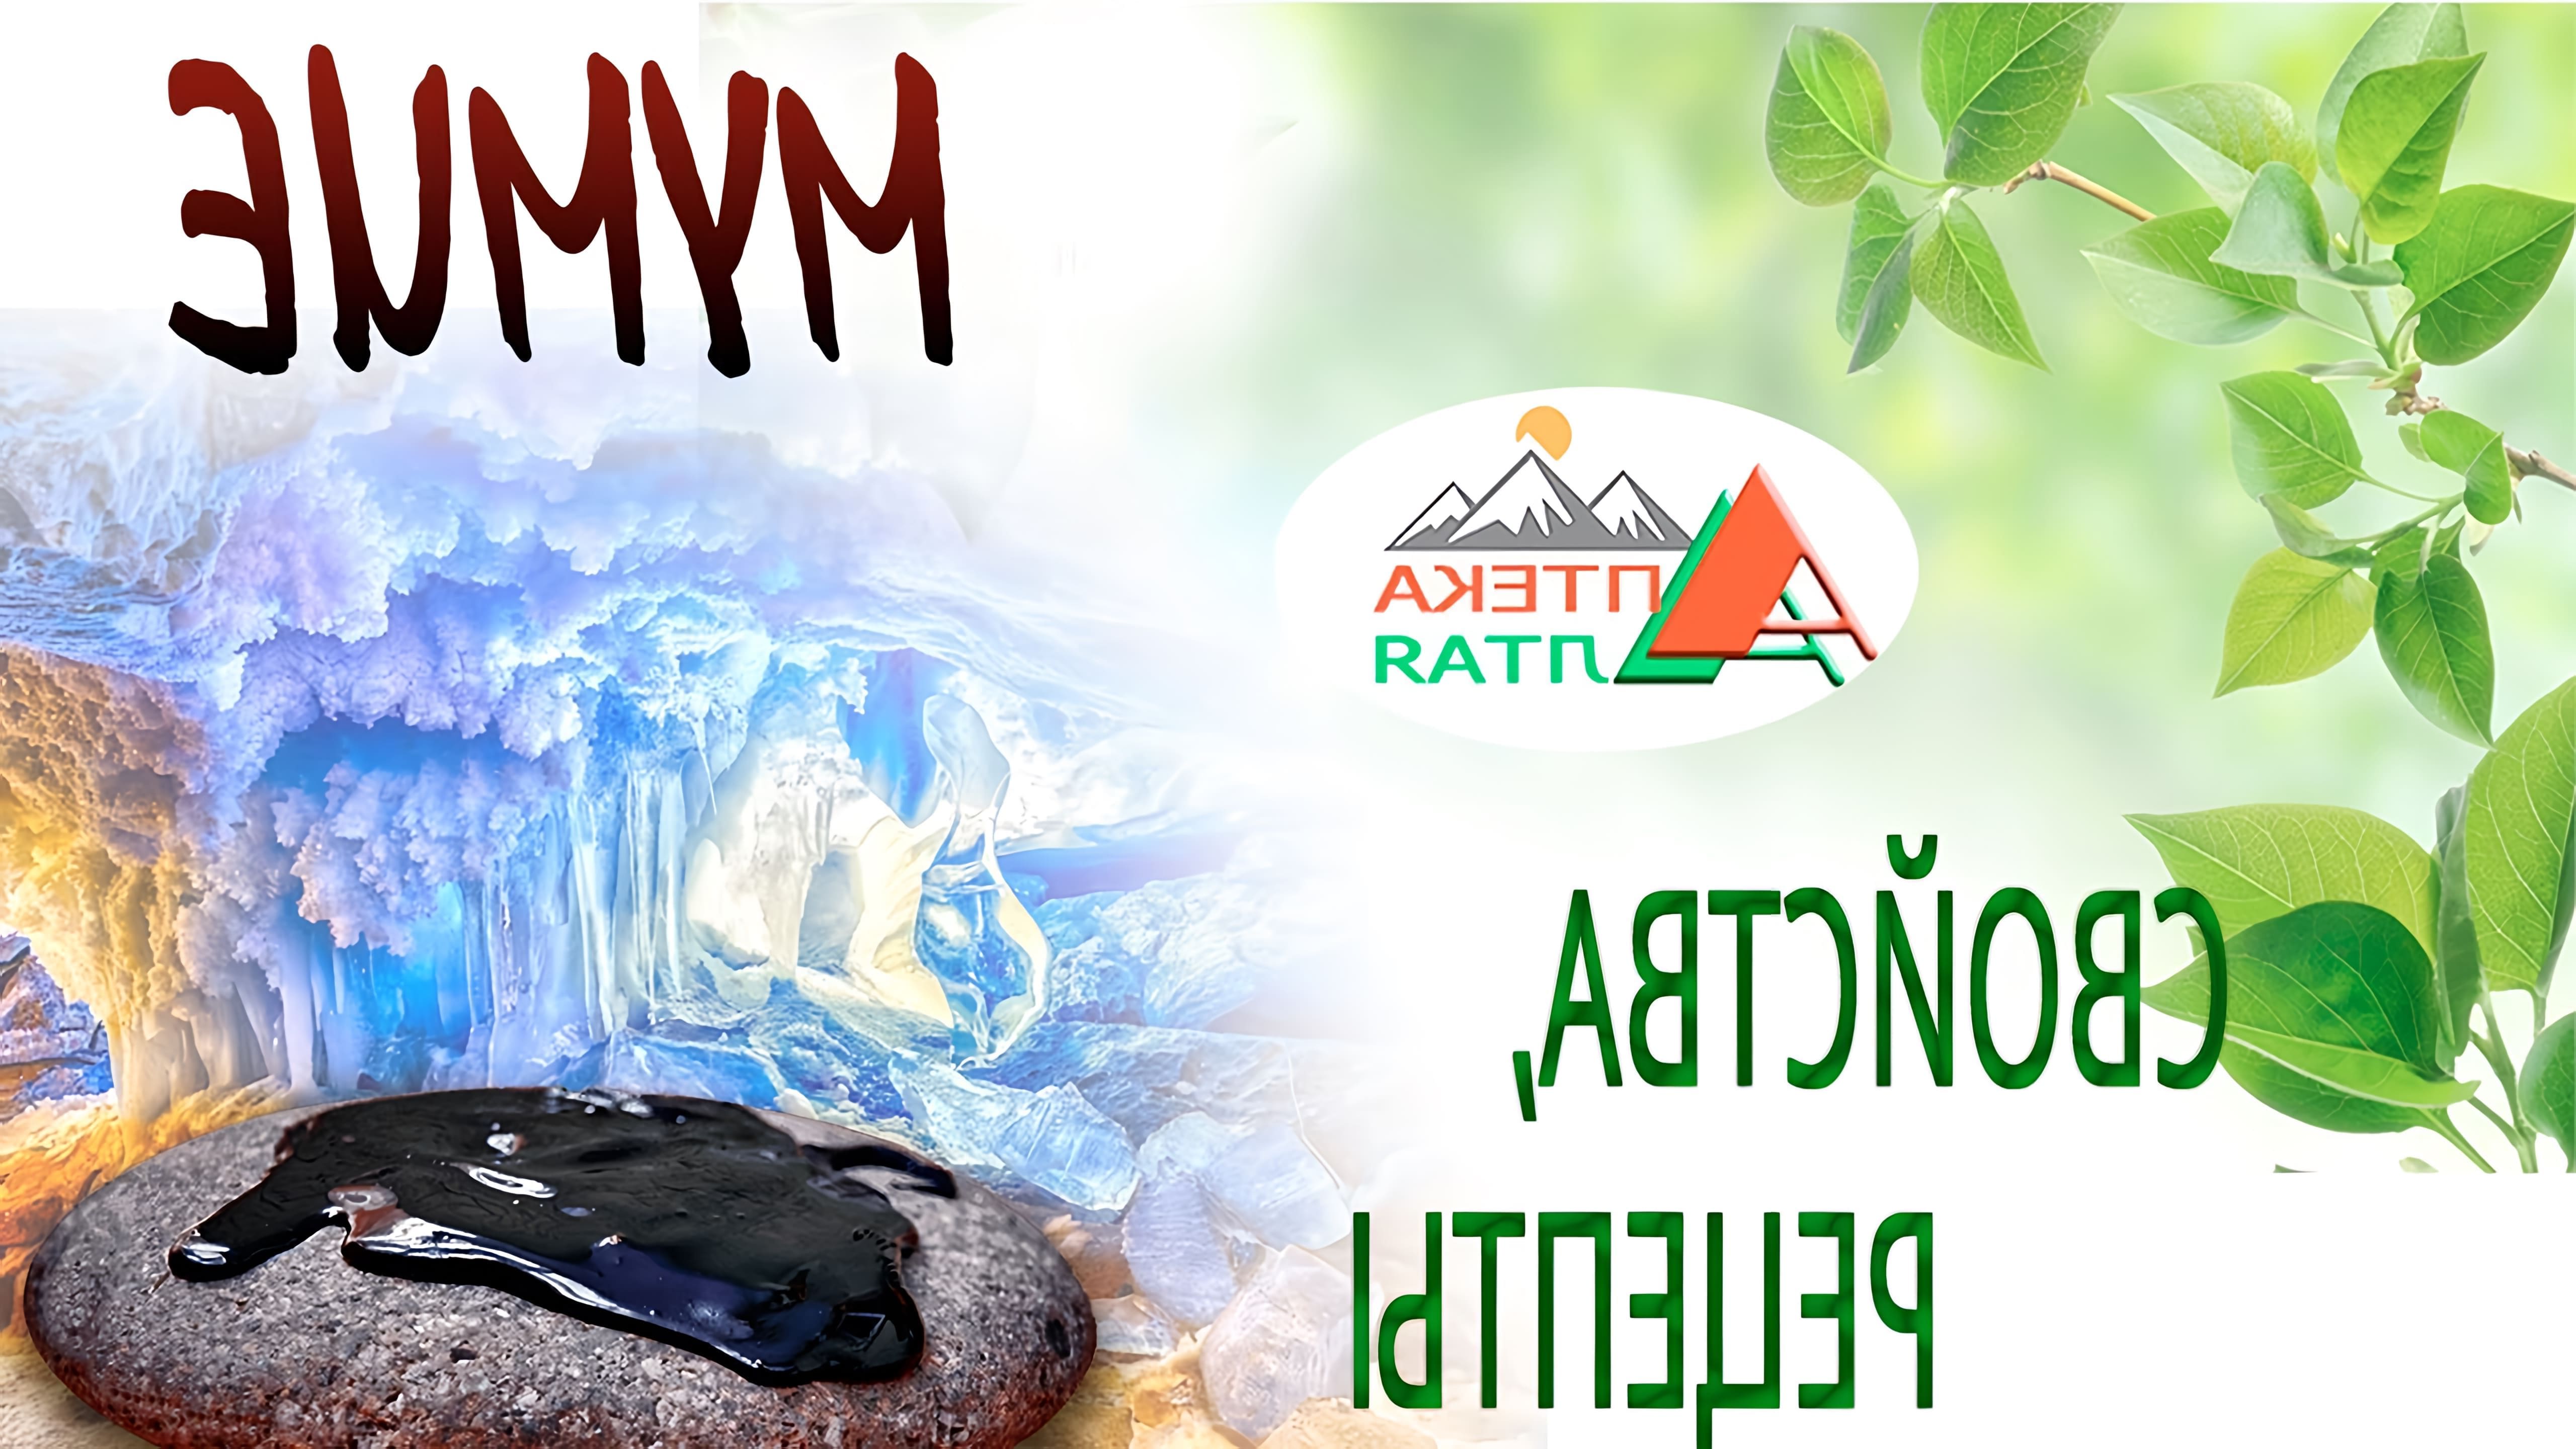 Мумие - это природный минеральный органический компаунд, обнаруженный в Алтайских горах, содержащий более 50 минералов, витаминов, эфирных масел